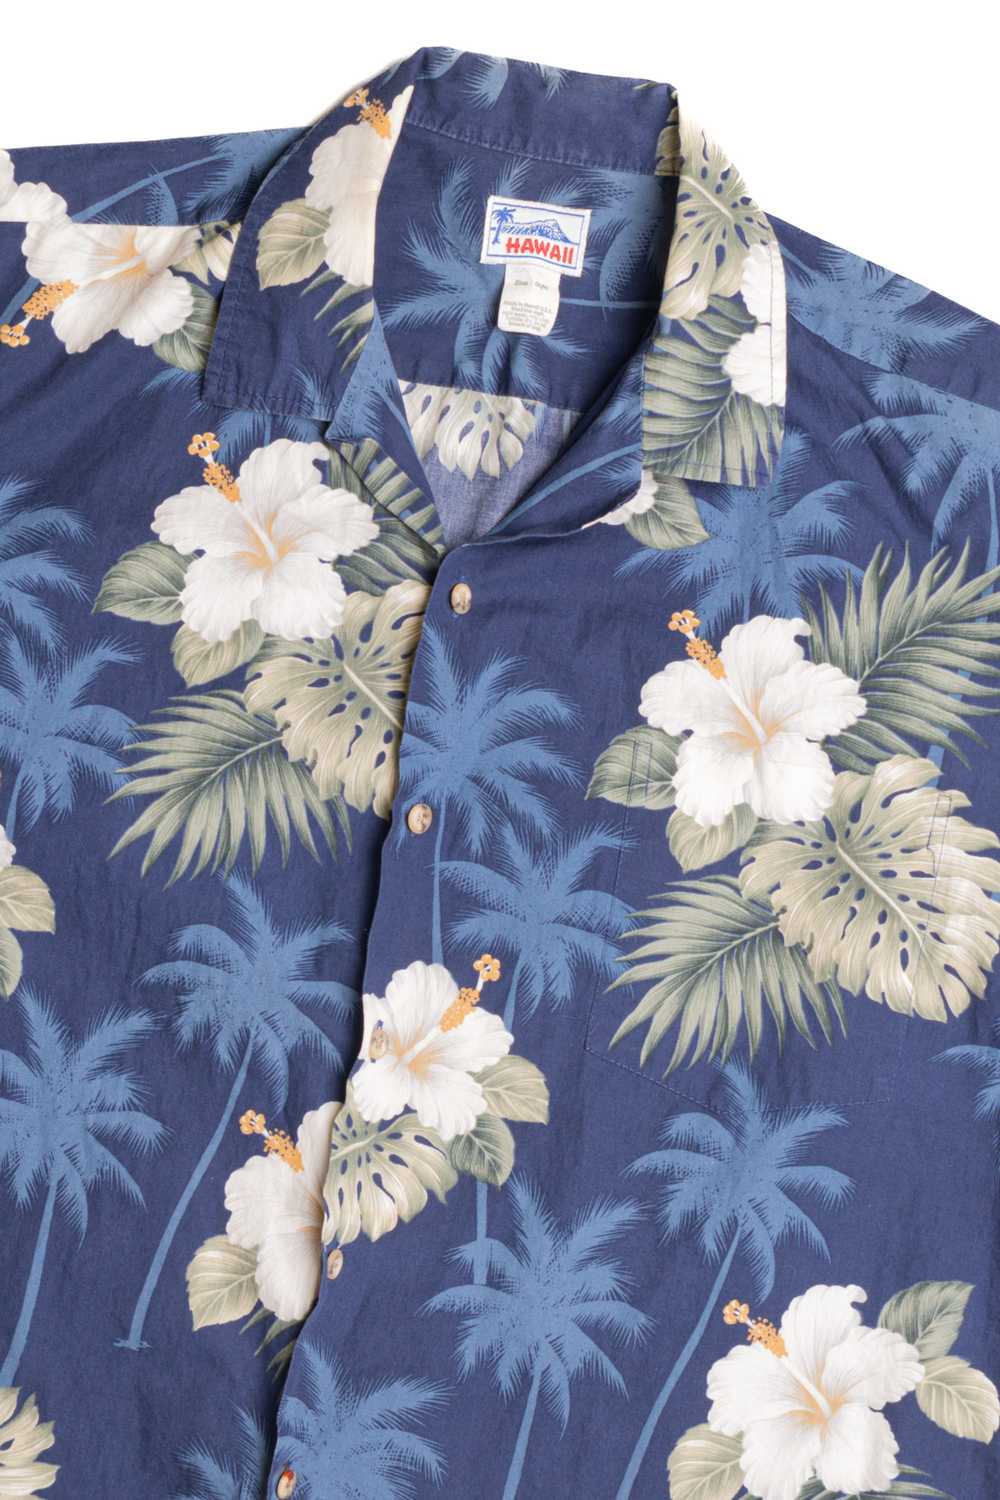 Hawaii Hawaiian Shirt 2257 - image 2